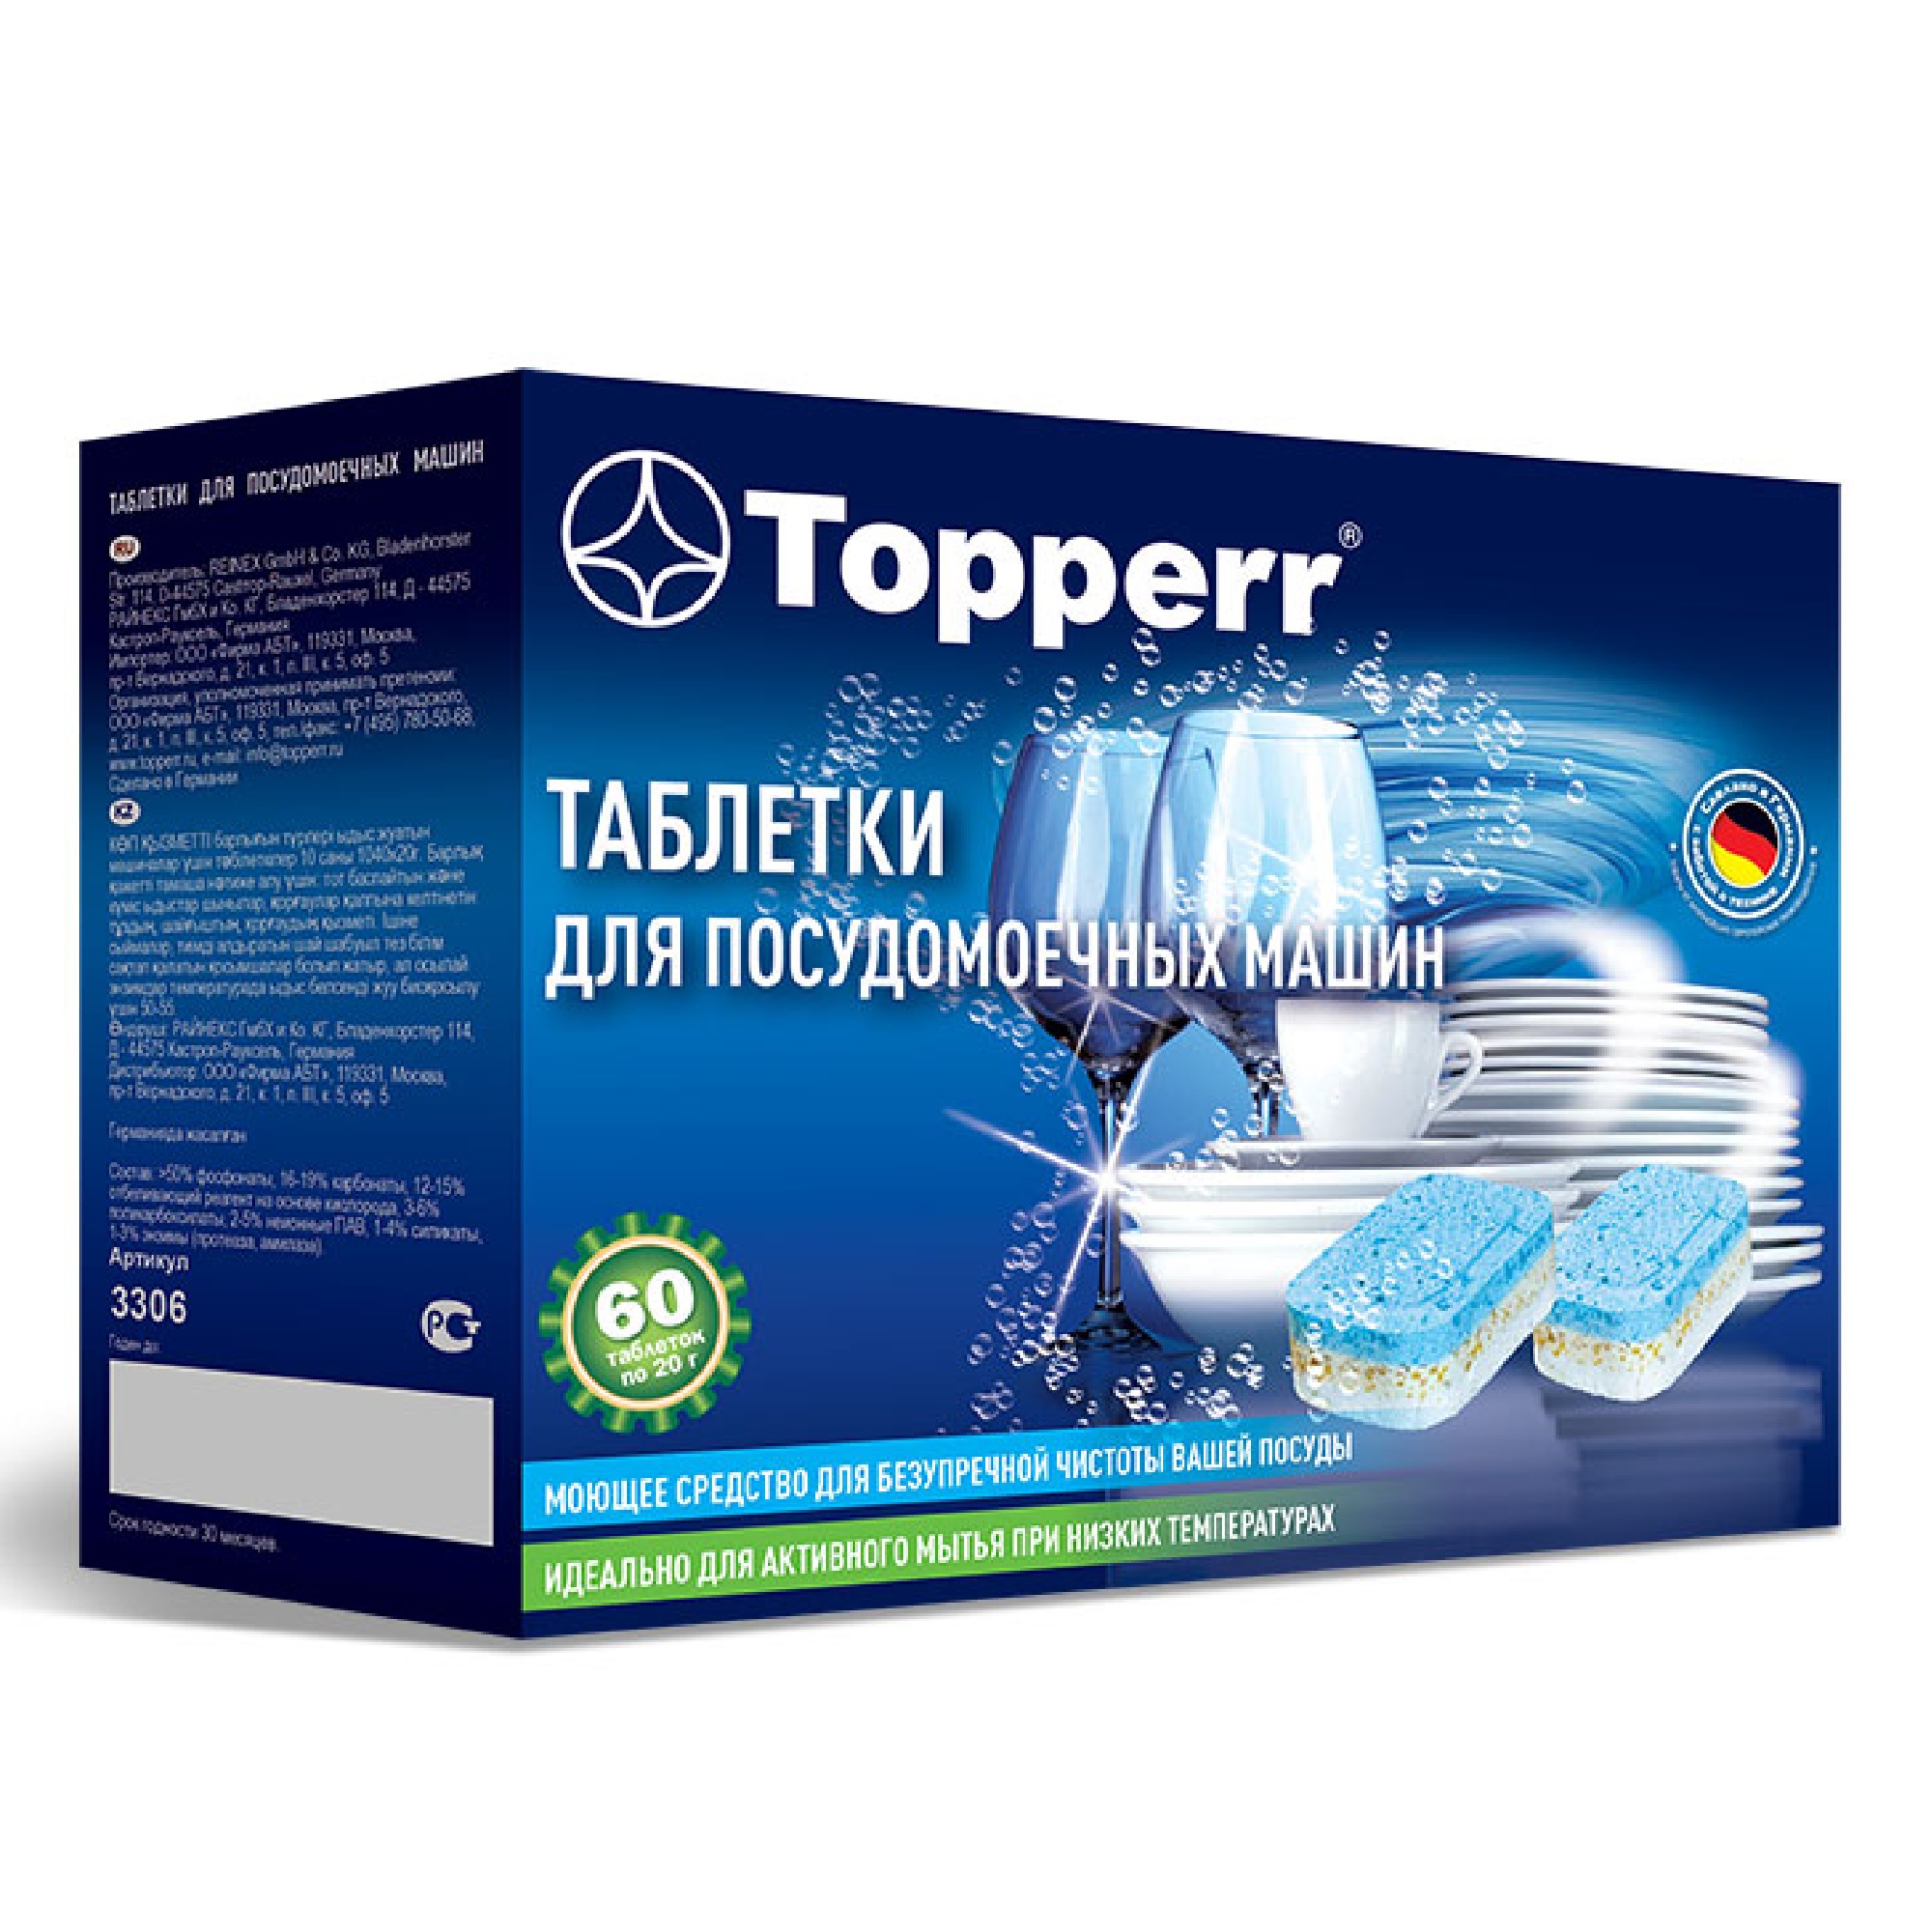 Topperr 3306 (Таблетки для посудомоечной машины Topperr 10 в 1, 60 шт .